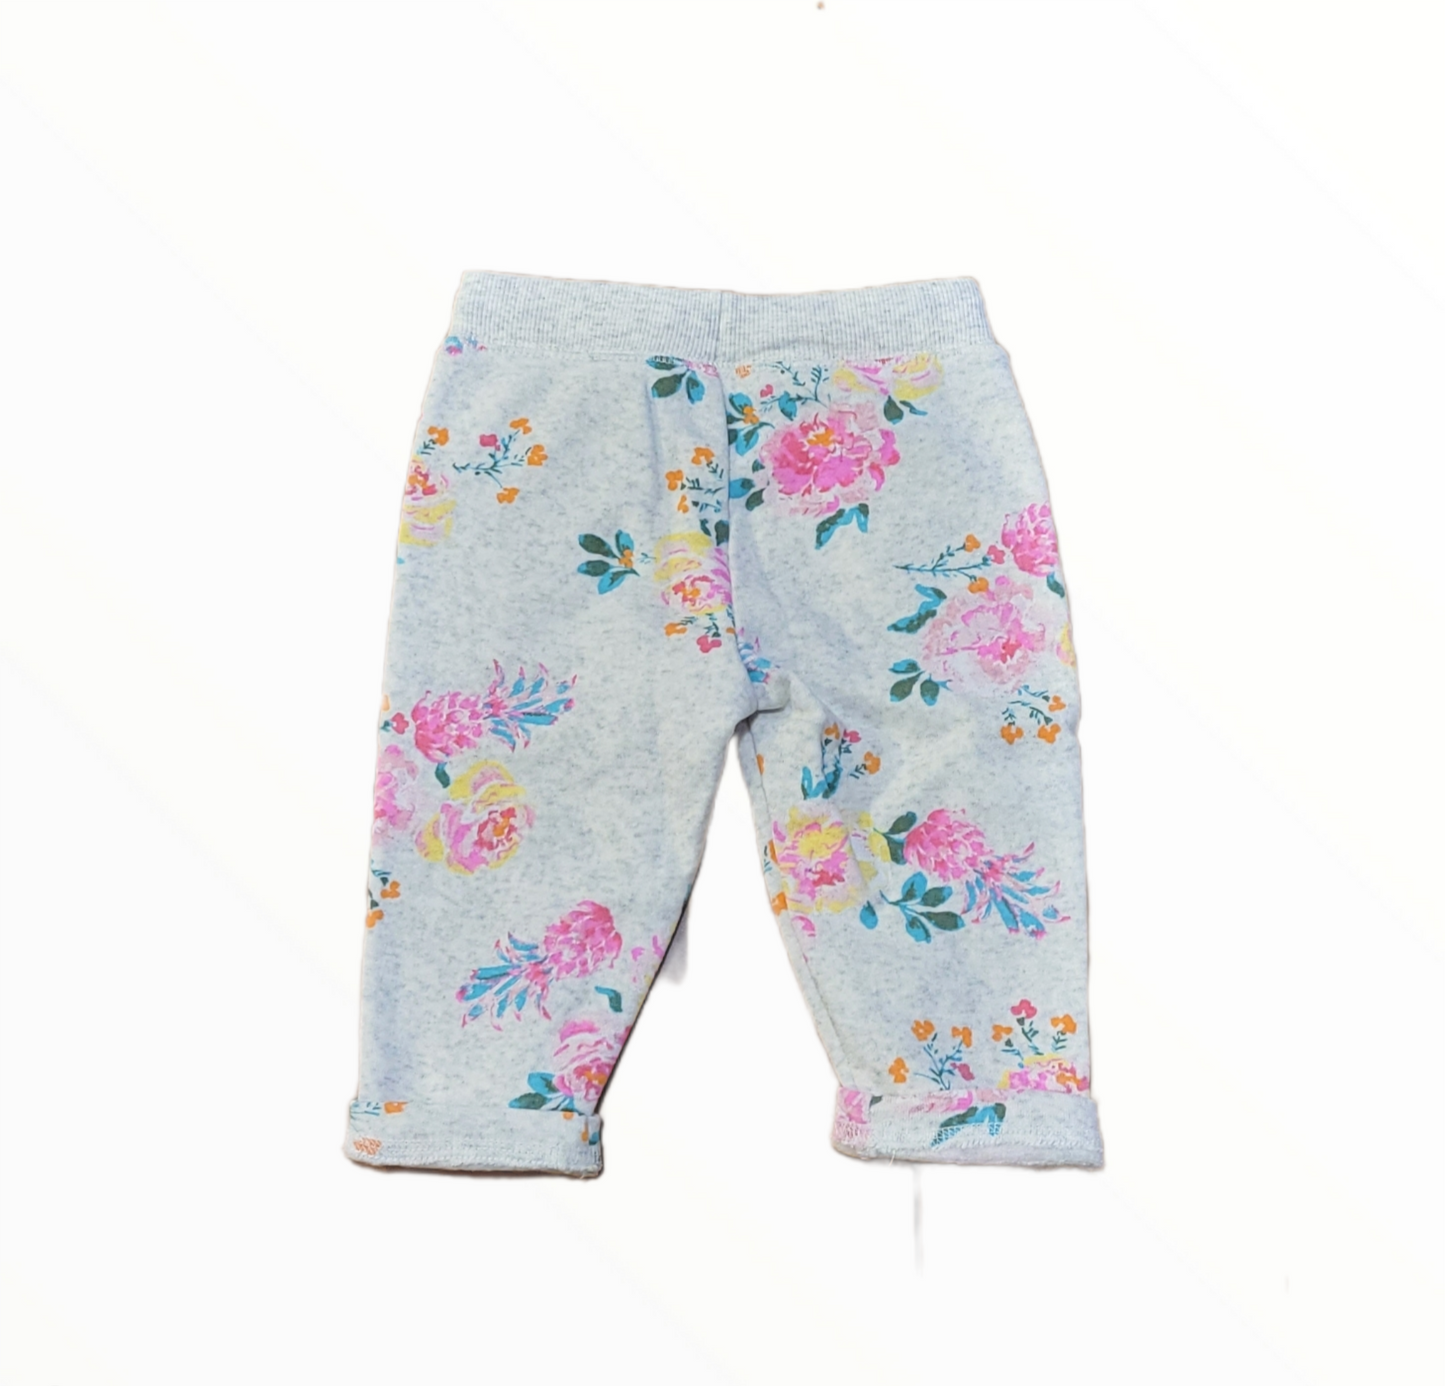 Floral Sweatpants